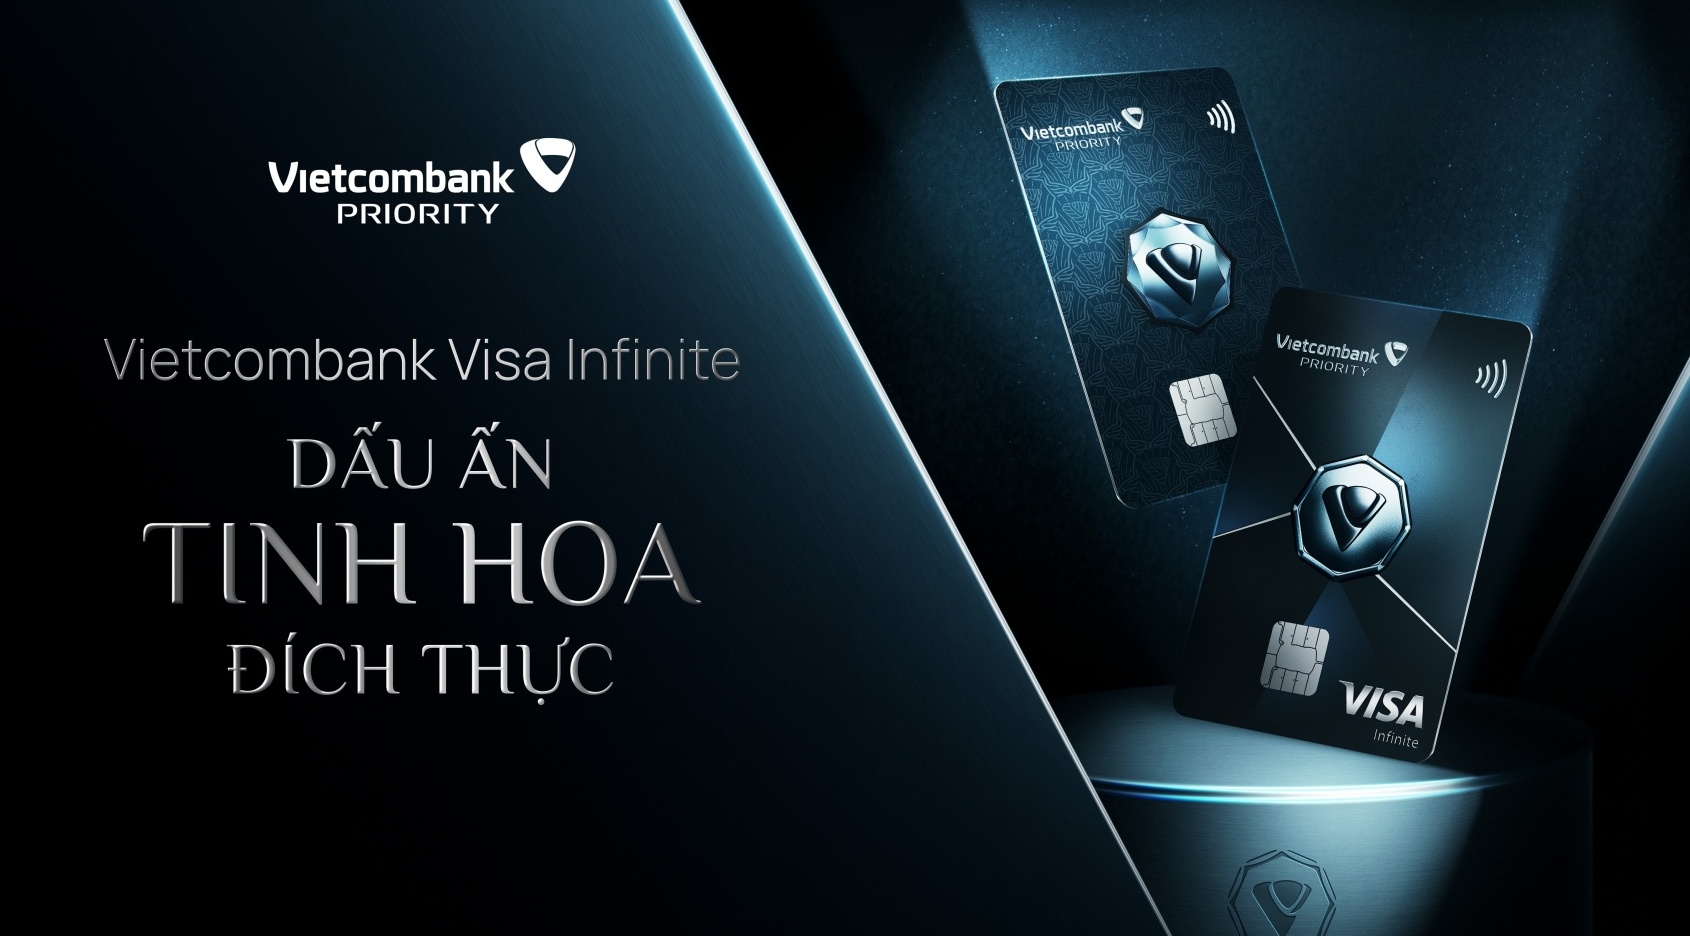 Ra mắt thẻ tín dụng Vietcombank Visa Infinite: dấu ấn tinh hoa đích thực